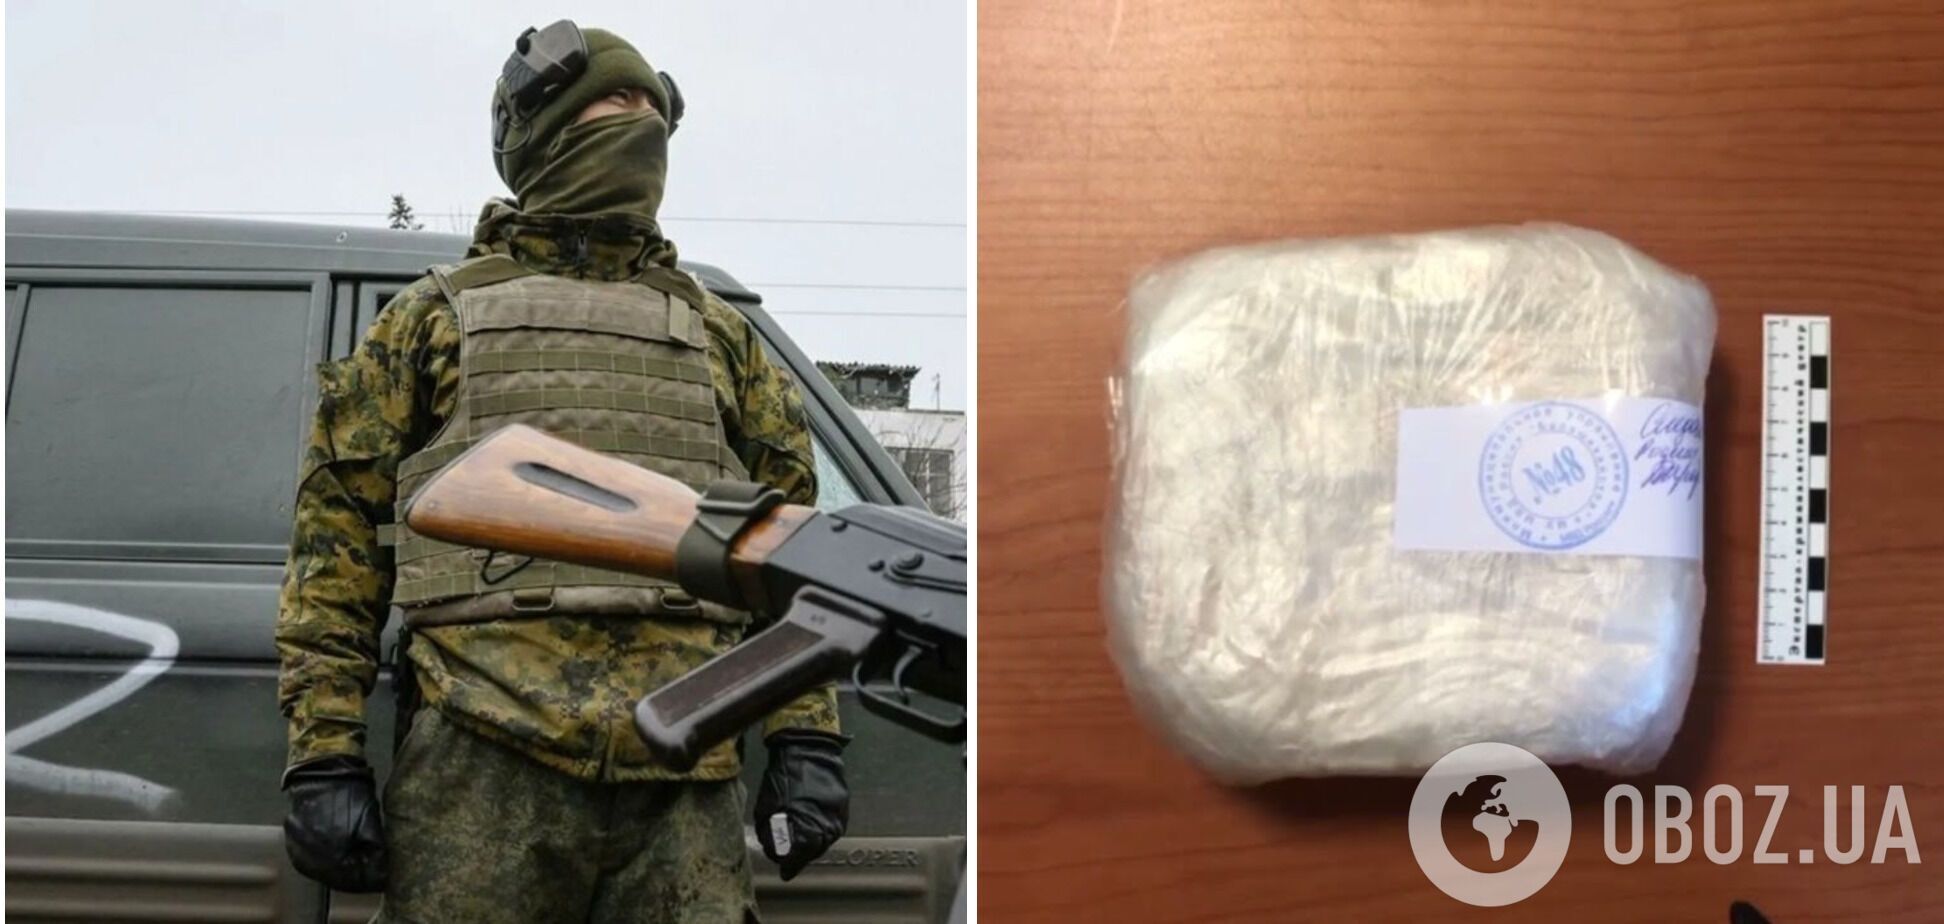 В Росії замкомандира роти затримали з кілограмом наркотиків